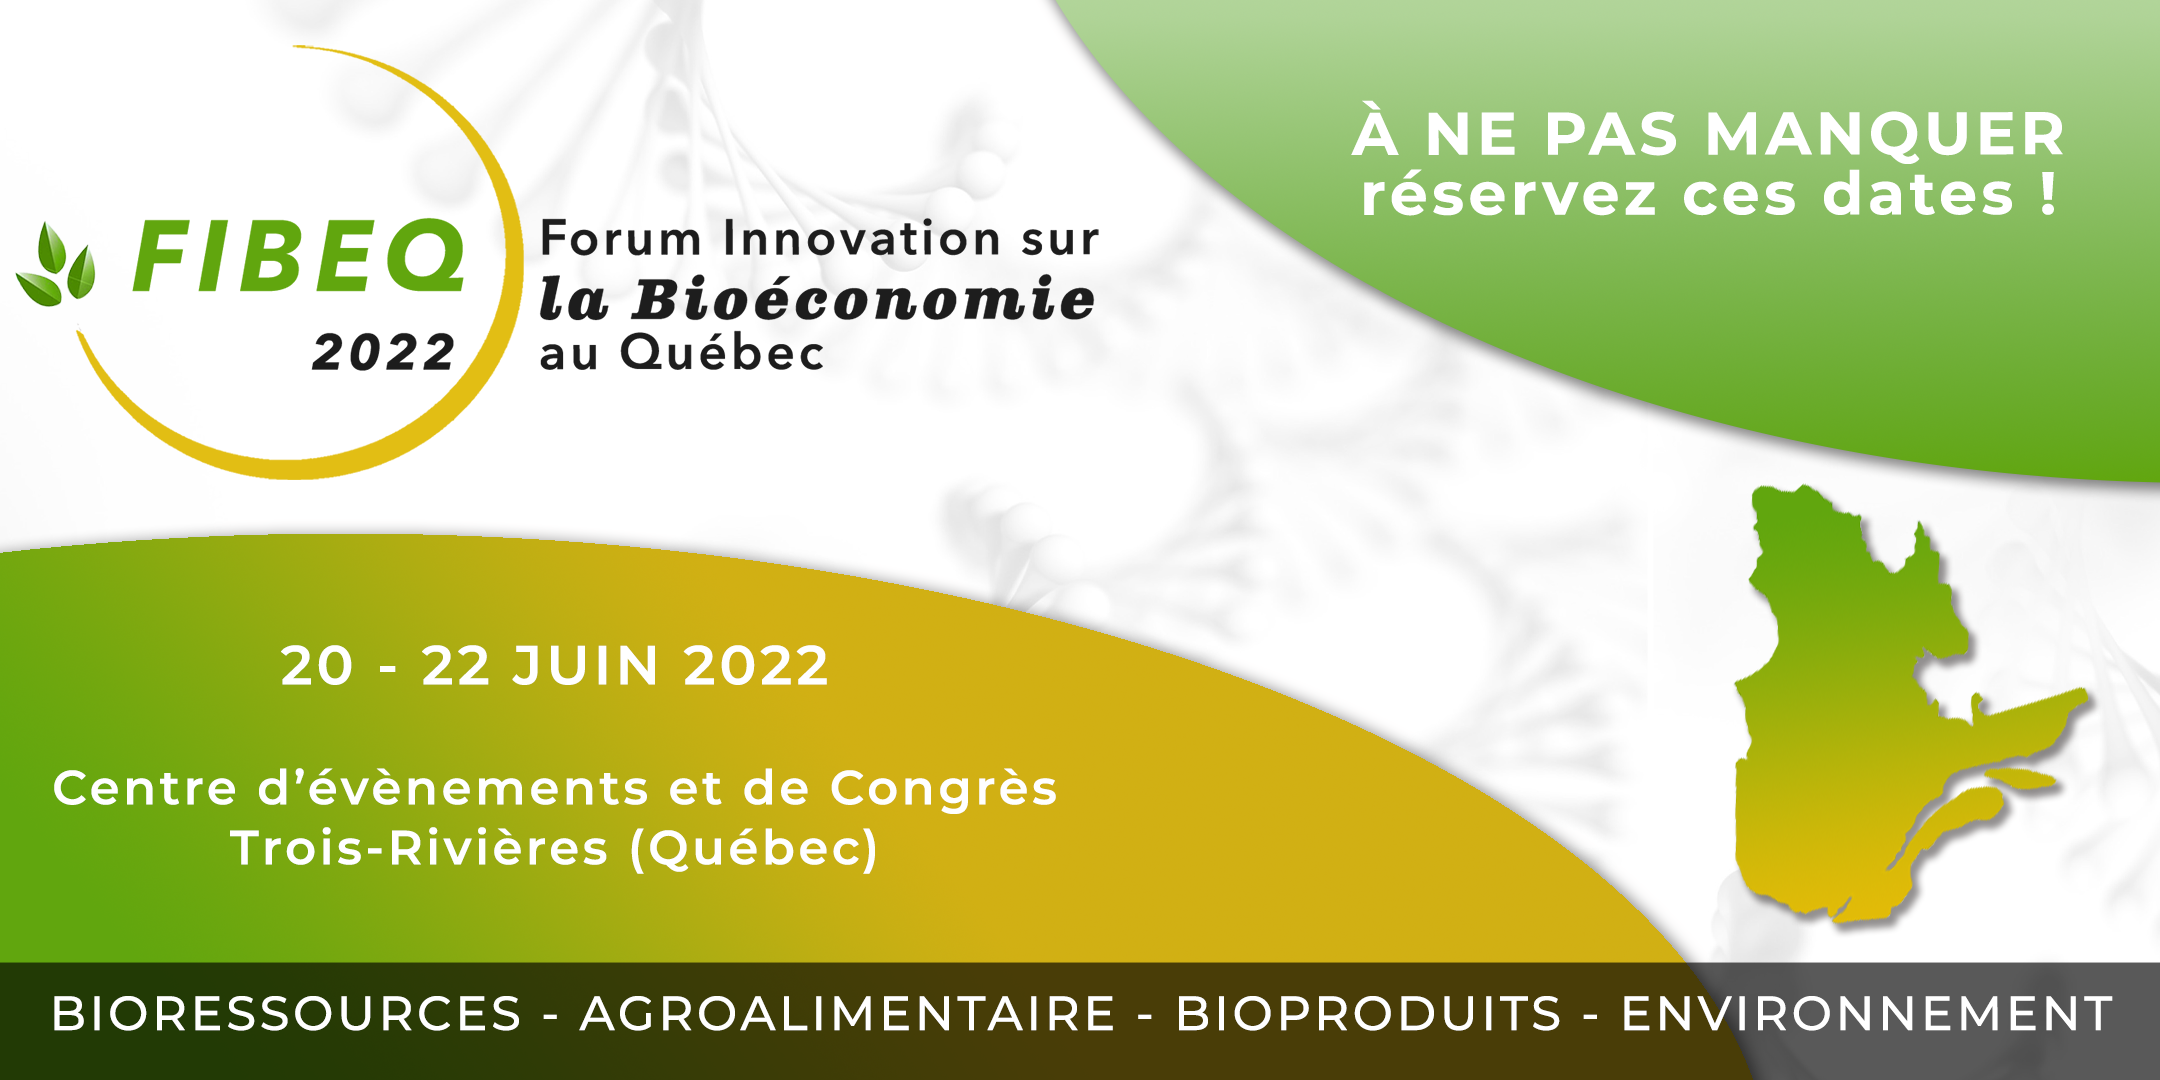 Deuxième édition du Forum Innovation sur la Bioéconomie au Québec - FIBEQ 2022